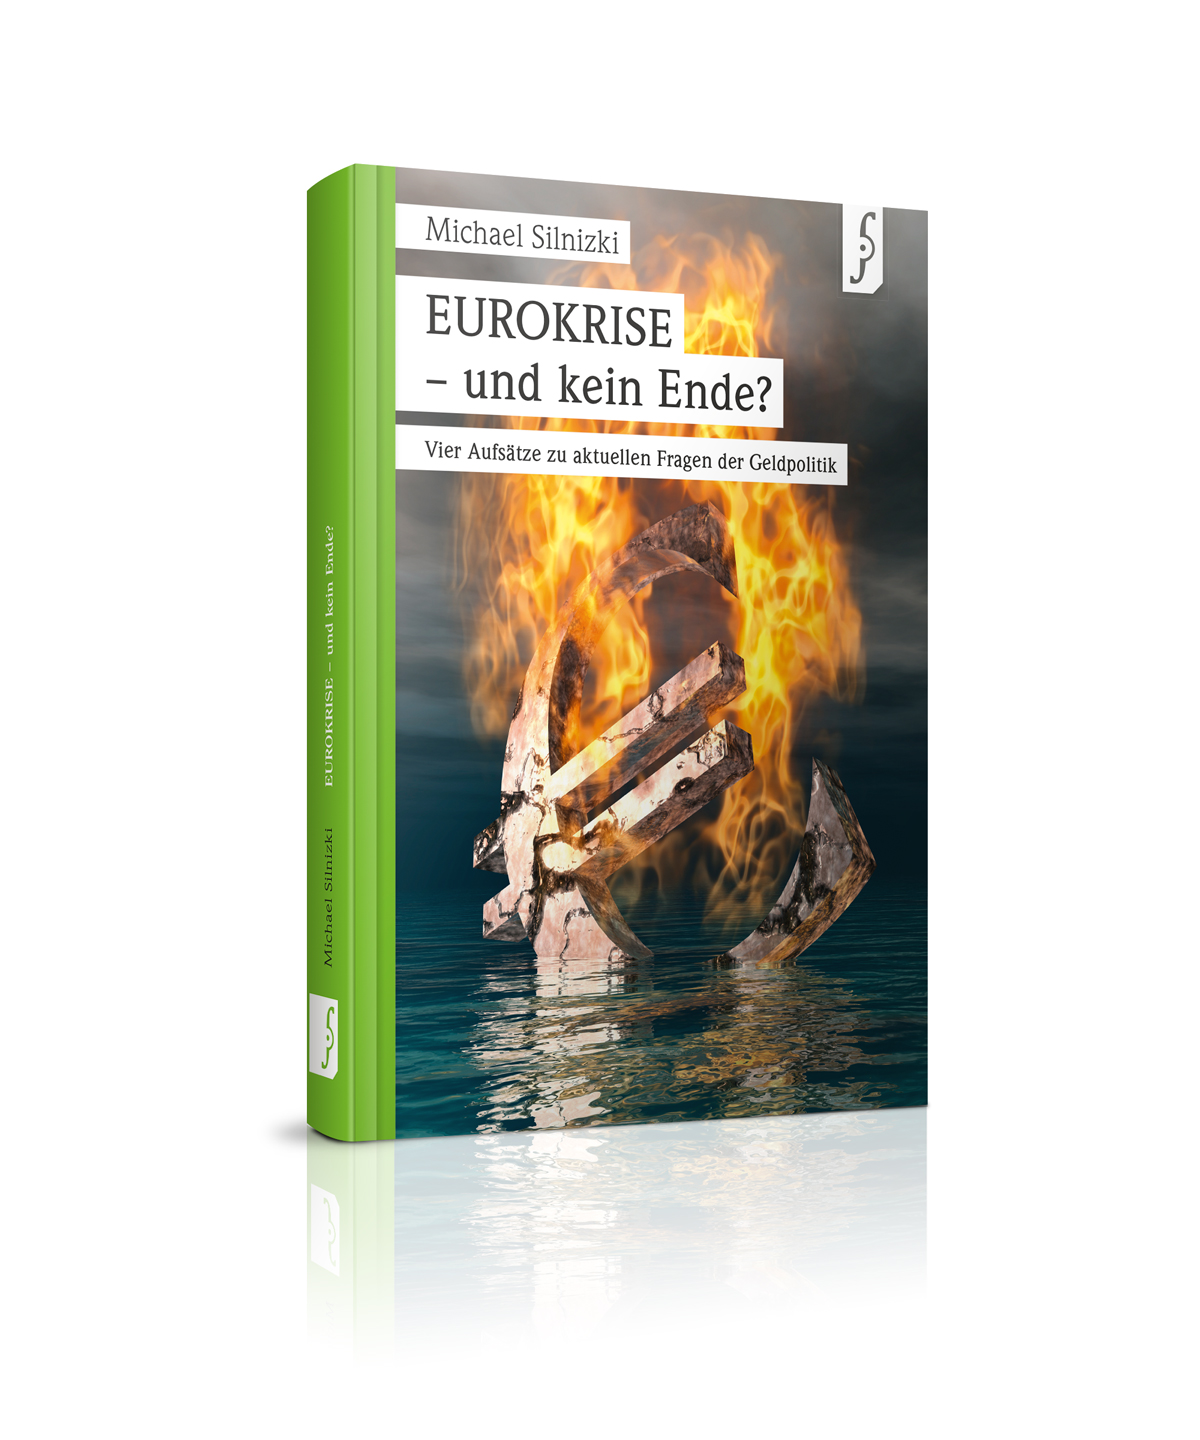 Eurokrise – und kein Ende? - ISBN 978-3-9816169-0-3, 112 S. 14,95 € (D)